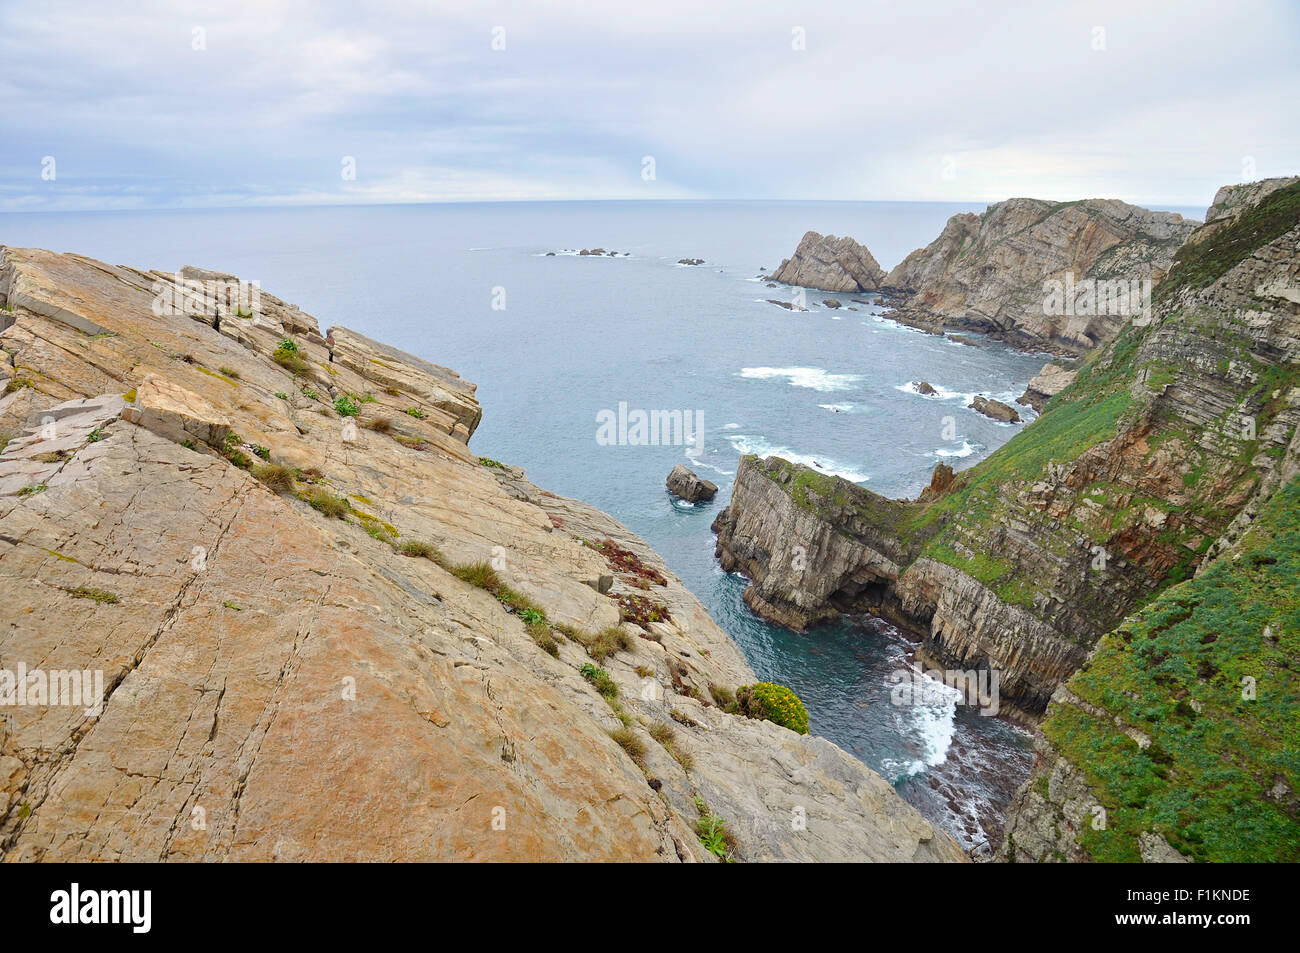 Landscape view of Cabo Peñas cape cliffs and coastline (Cabo de Peñas Protected Landscape, Gozón, Principality of Asturias, Cantabrian Sea, Spain) Stock Photo